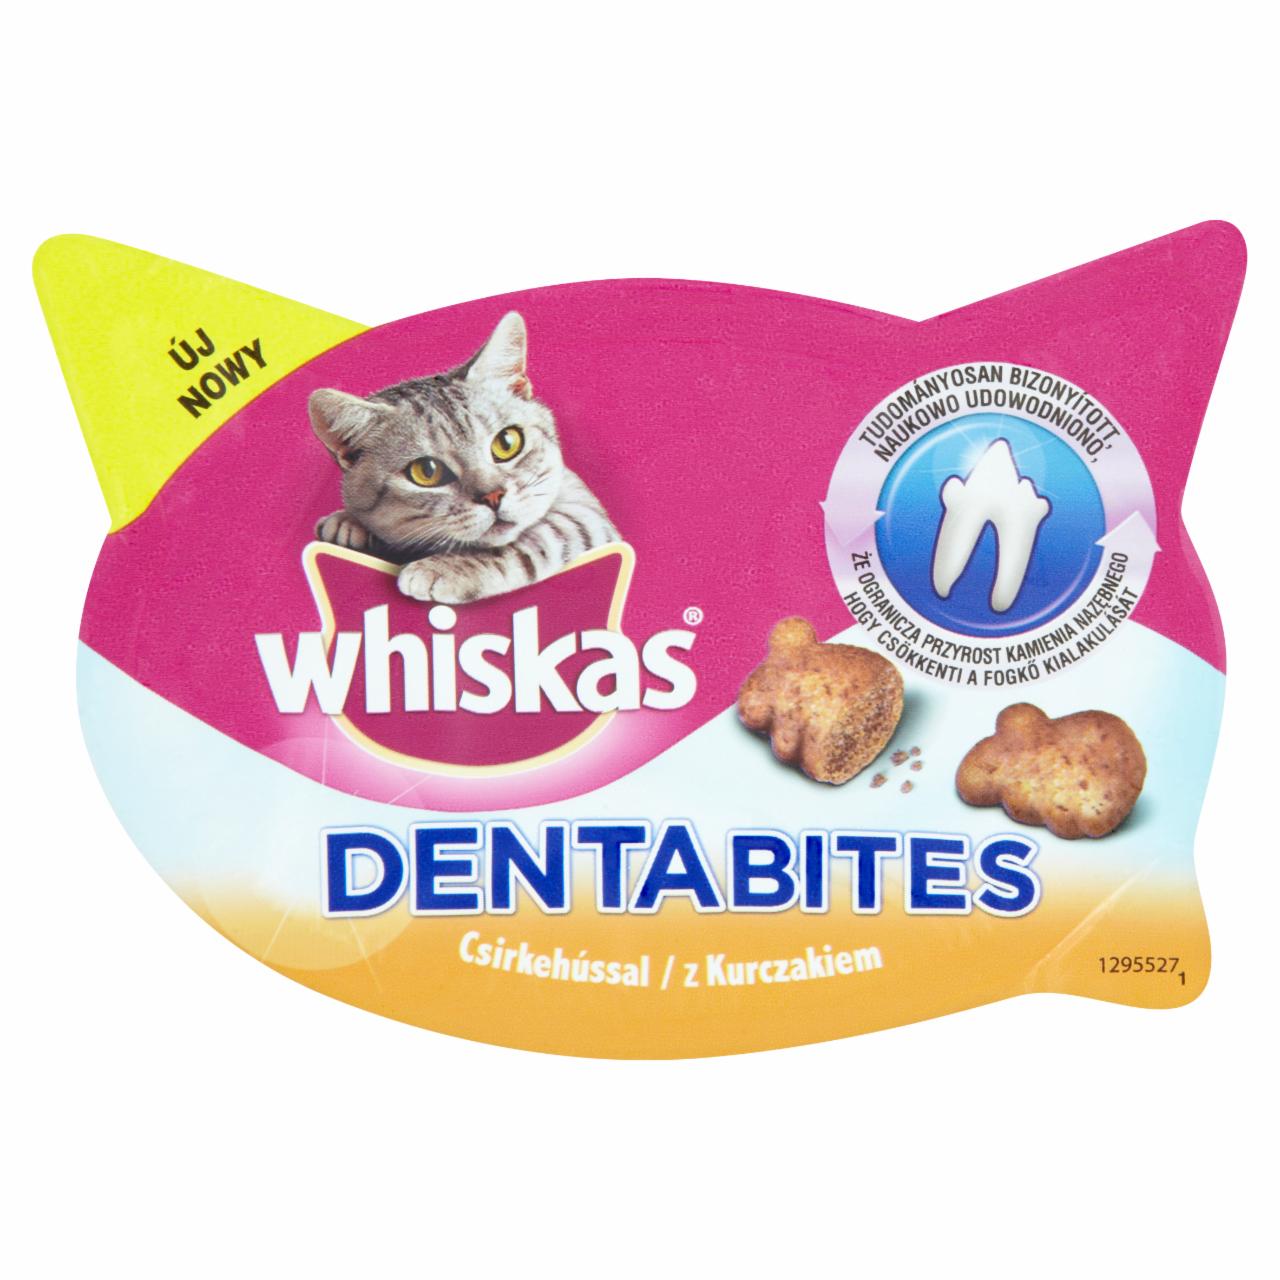 Képek - Whiskas Dentabites kiegészítő állateledel felnőtt macskák számára csirkehússal 40 g